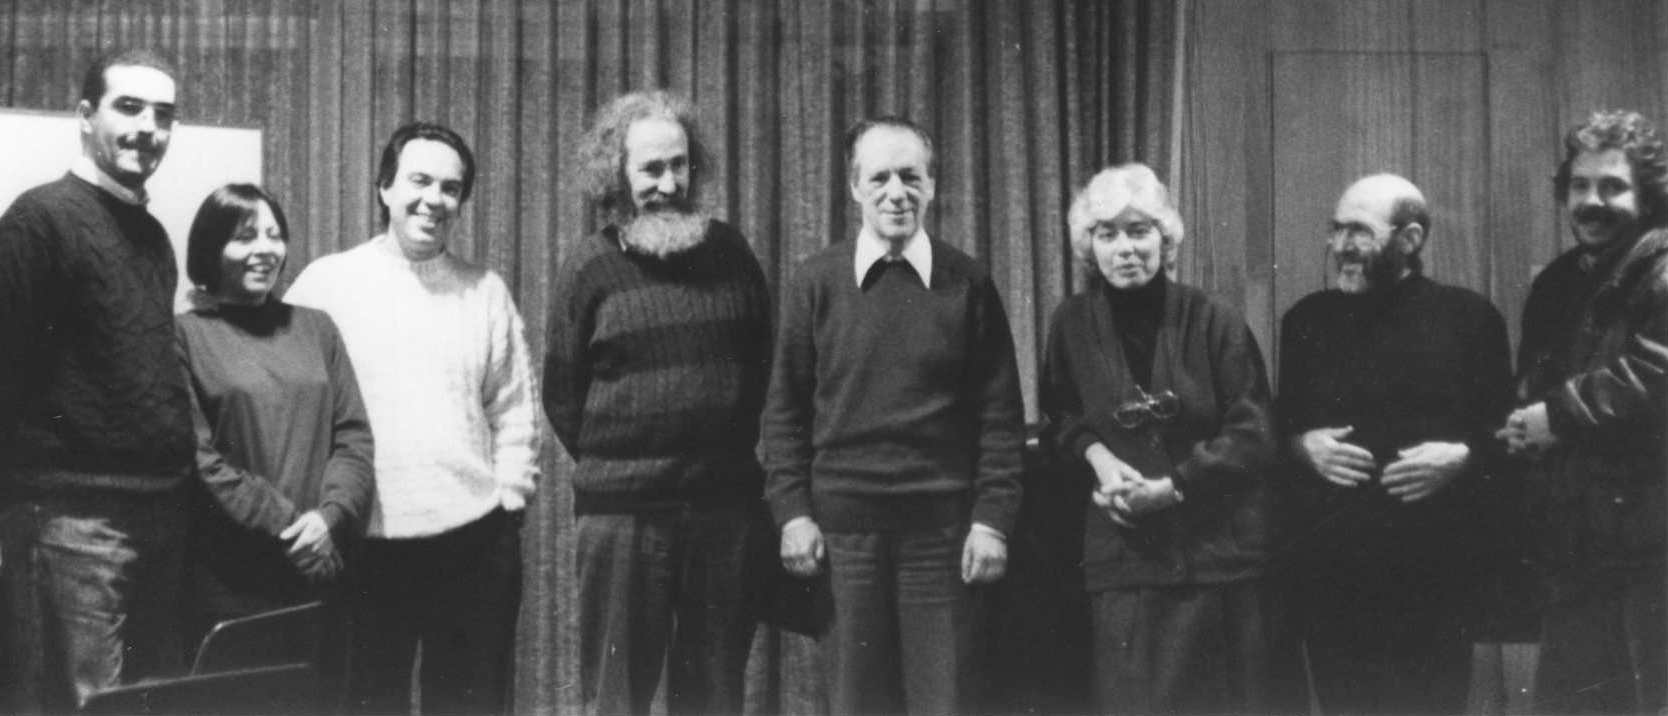 Roeshlschlägel con compositores uruguayos